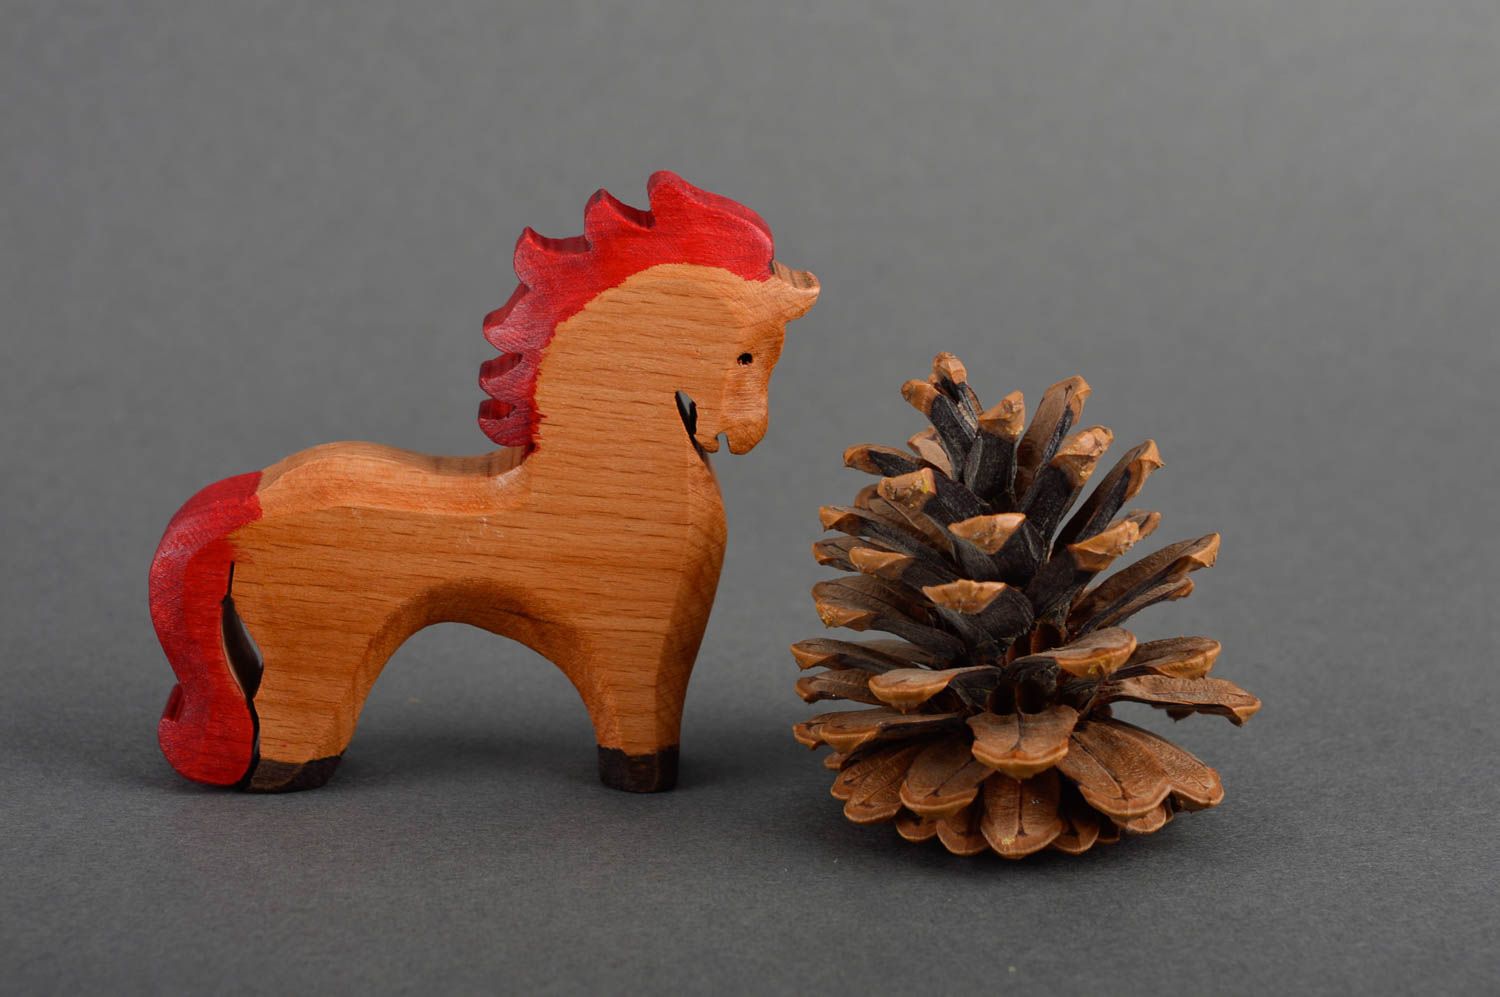 Игрушка для детей игрушка ручной работы игрушка лошадка деревянная маленькая фото 1